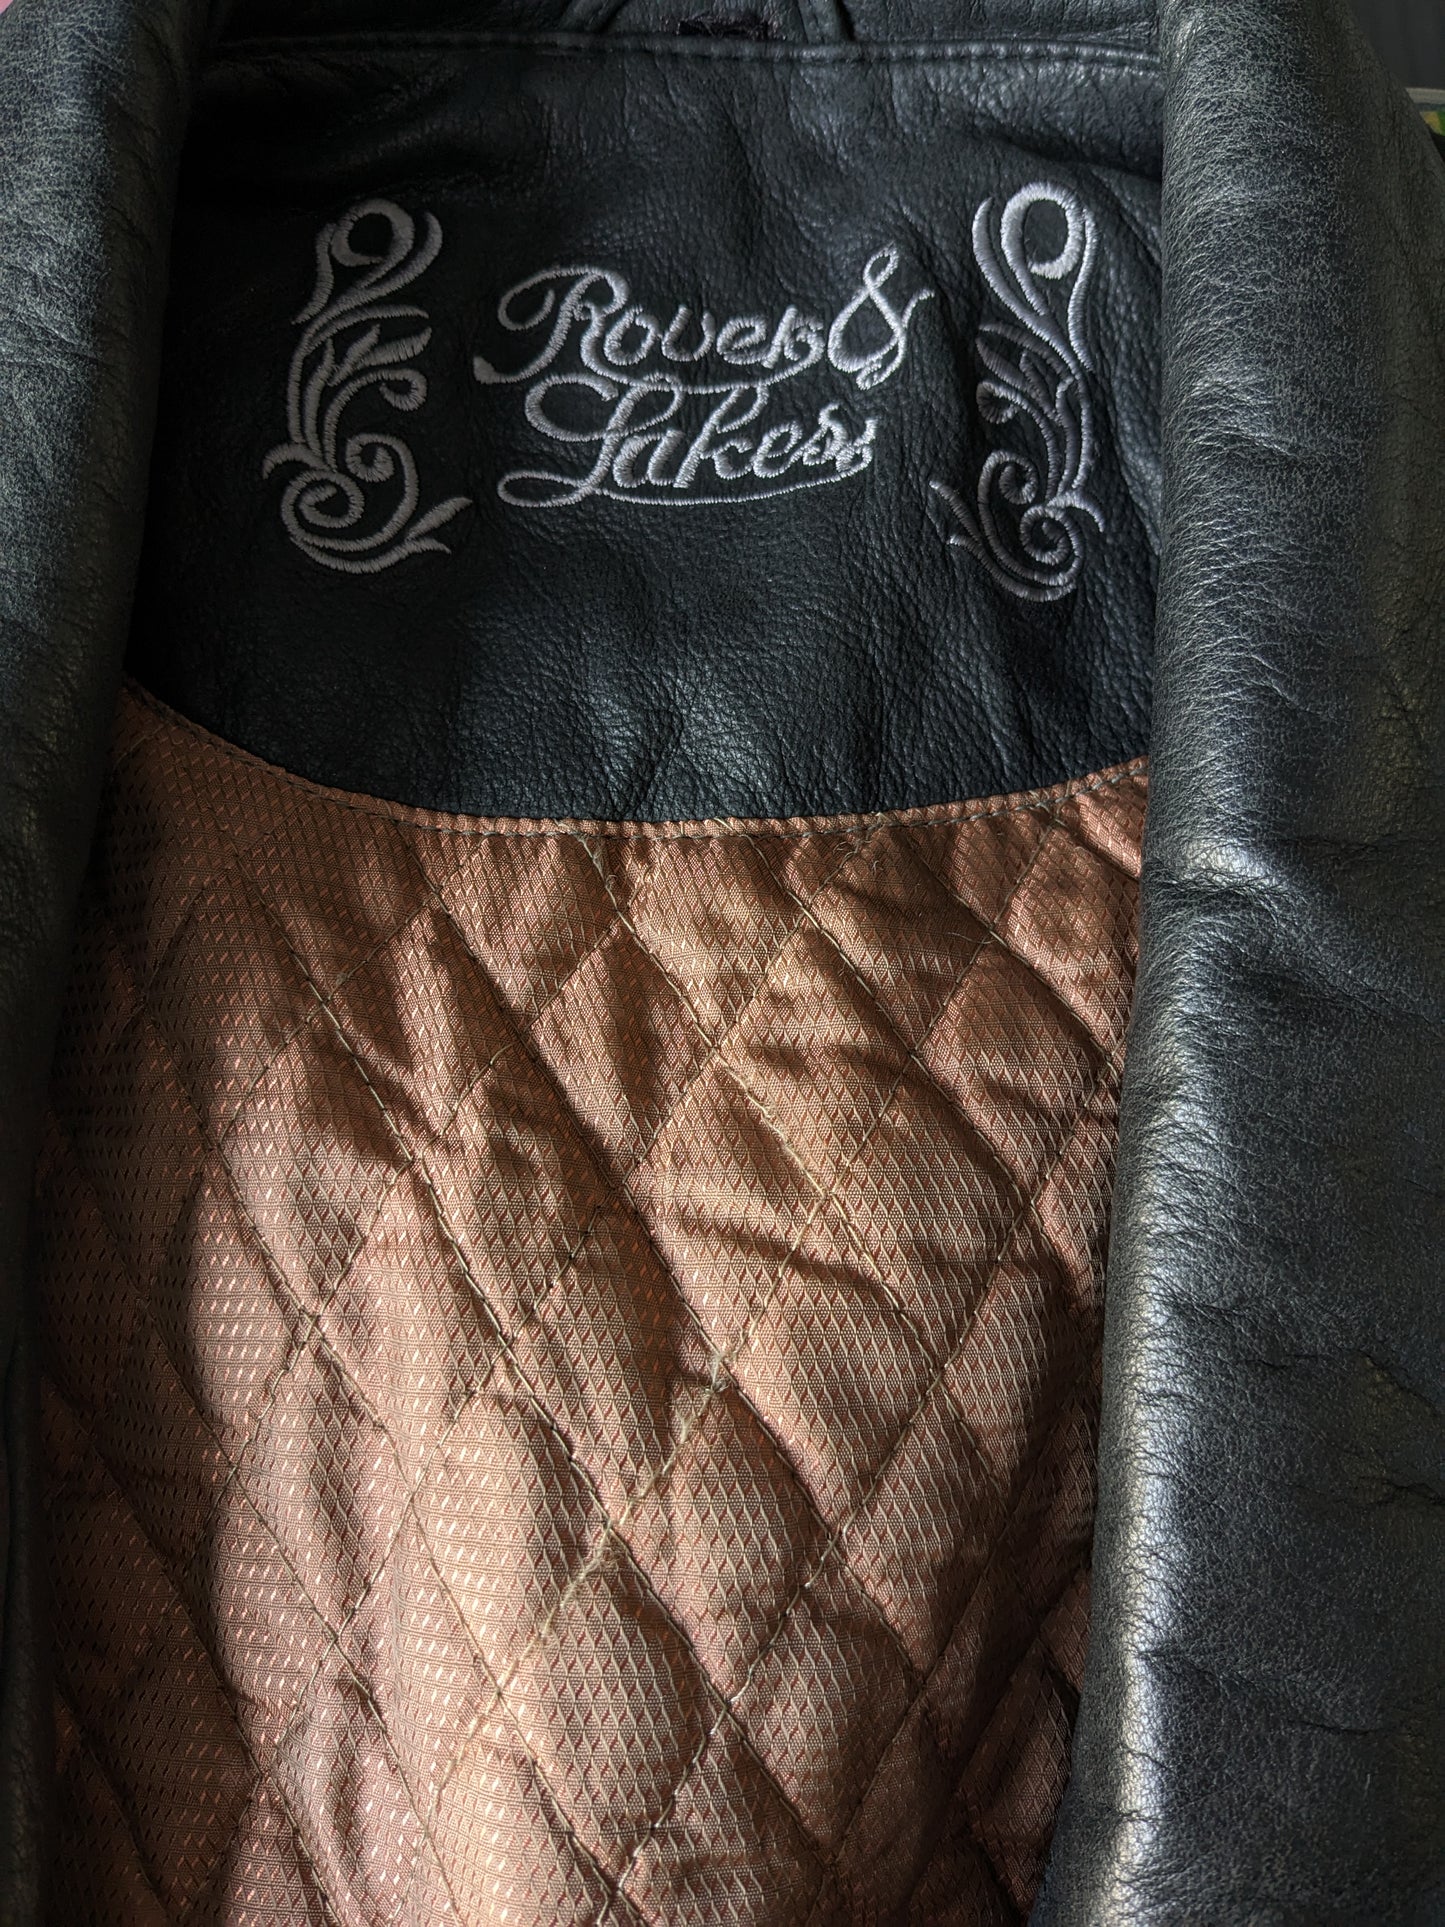 Vintage 80 - 90's Rover & Lakes aprenden el cuerpo del cuerpo / chaleco. Muchas bolsas, 2 bolsillos internos y luz forrada. Marrón / negro. Tamaño xl.